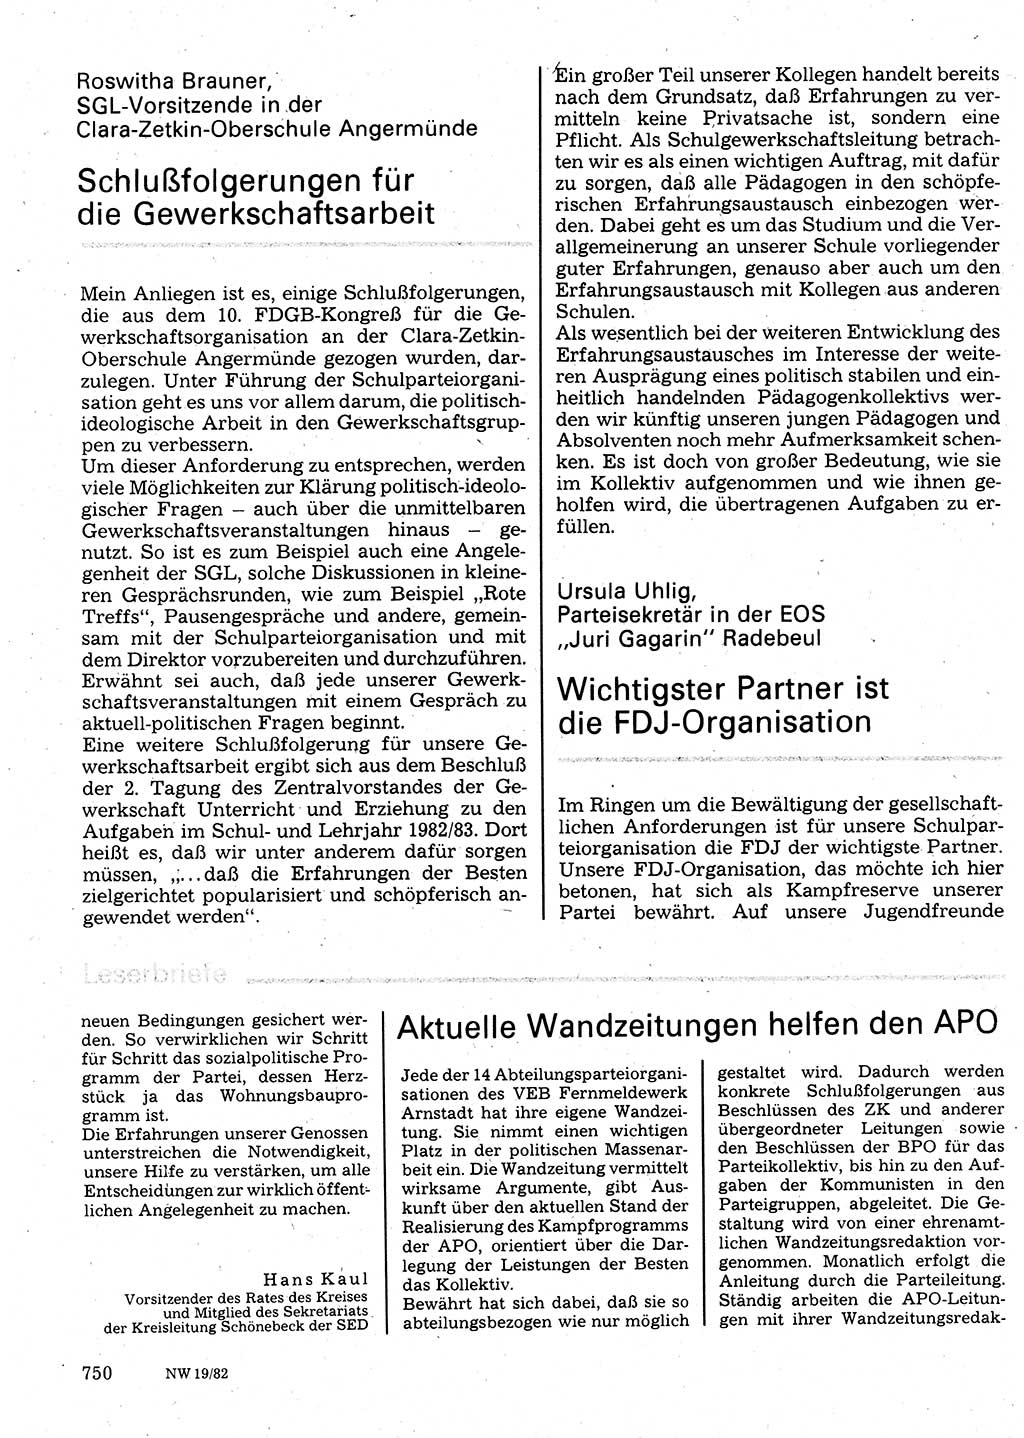 Neuer Weg (NW), Organ des Zentralkomitees (ZK) der SED (Sozialistische Einheitspartei Deutschlands) für Fragen des Parteilebens, 37. Jahrgang [Deutsche Demokratische Republik (DDR)] 1982, Seite 750 (NW ZK SED DDR 1982, S. 750)